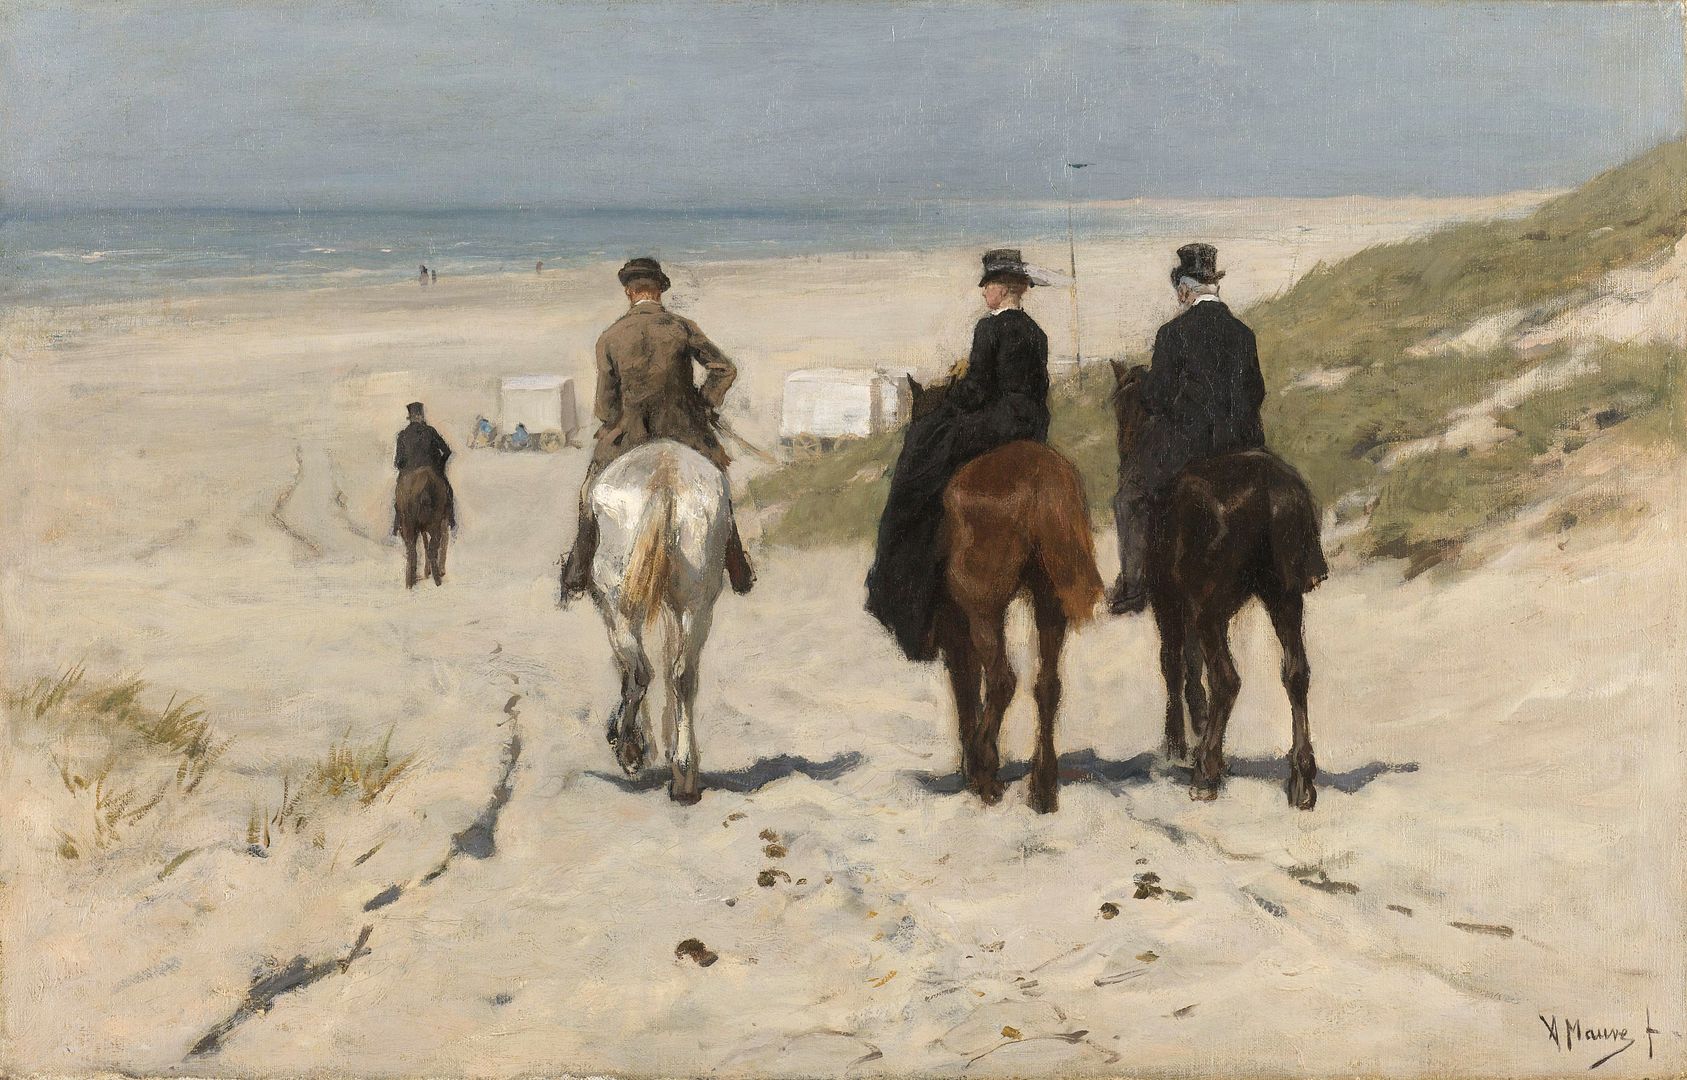 Morning Ride along the Beach, Anton Mauve, 1876